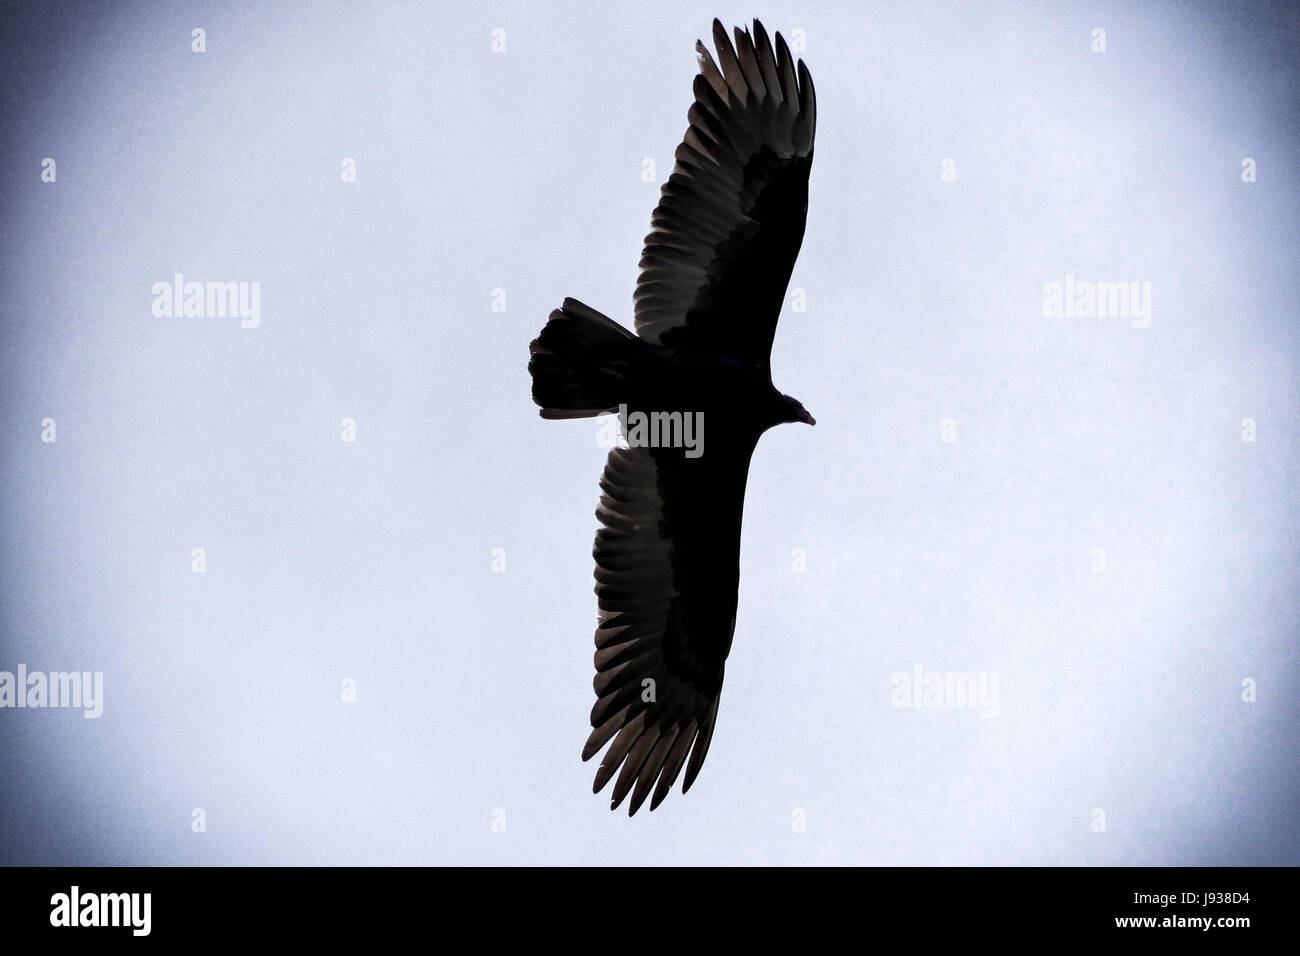 Soaring eagle Stock Photo